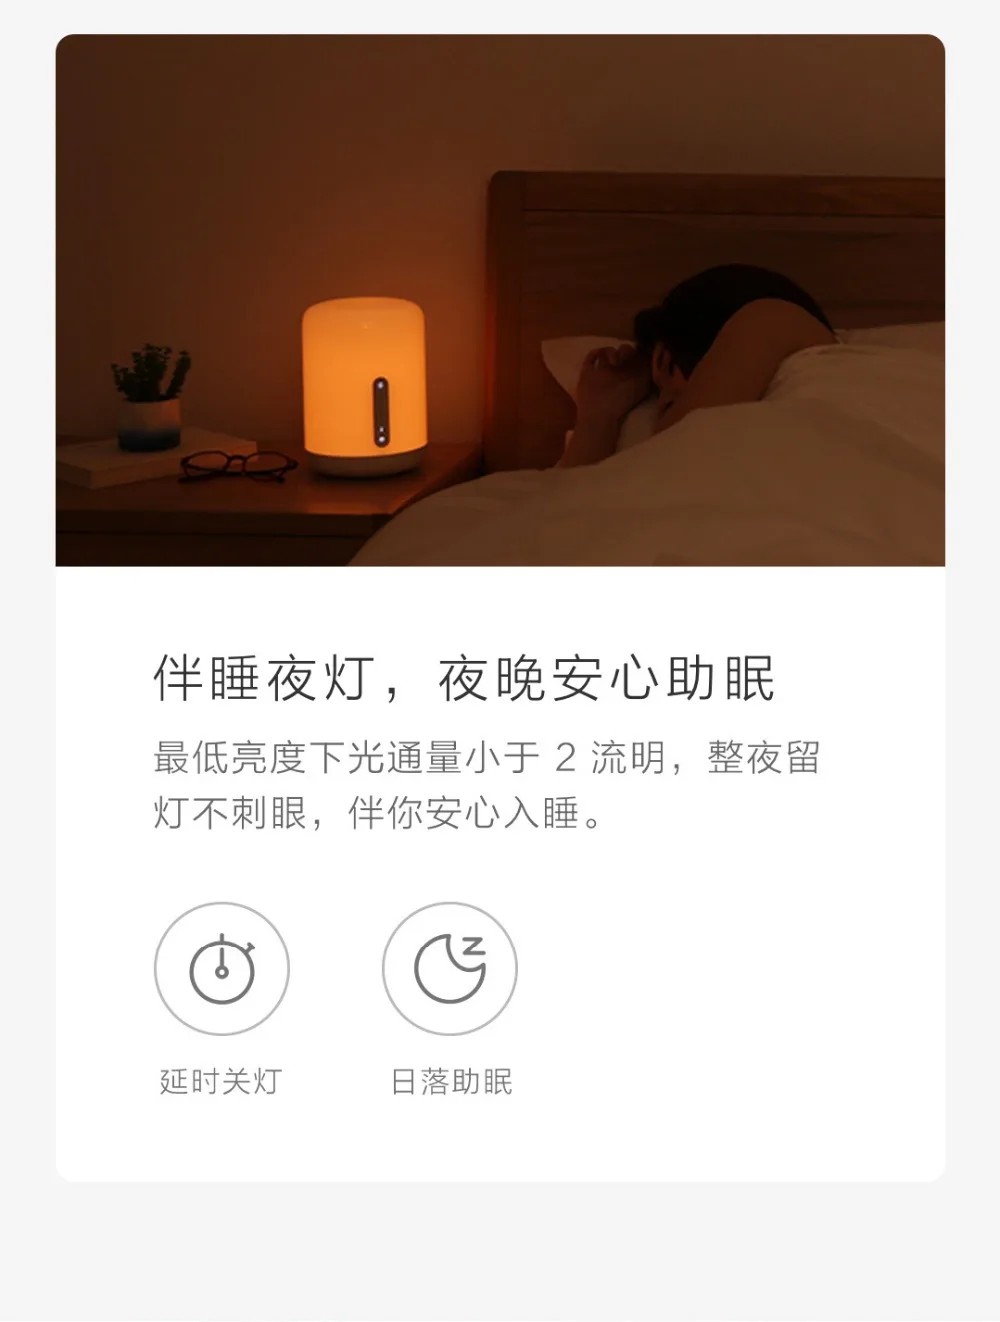 Оригинальная прикроватная лампа xiaomi Yeelight mijia meter, мультиголосовое управление, сенсорный выключатель, умное приложение, регулировка цвета для apple siri